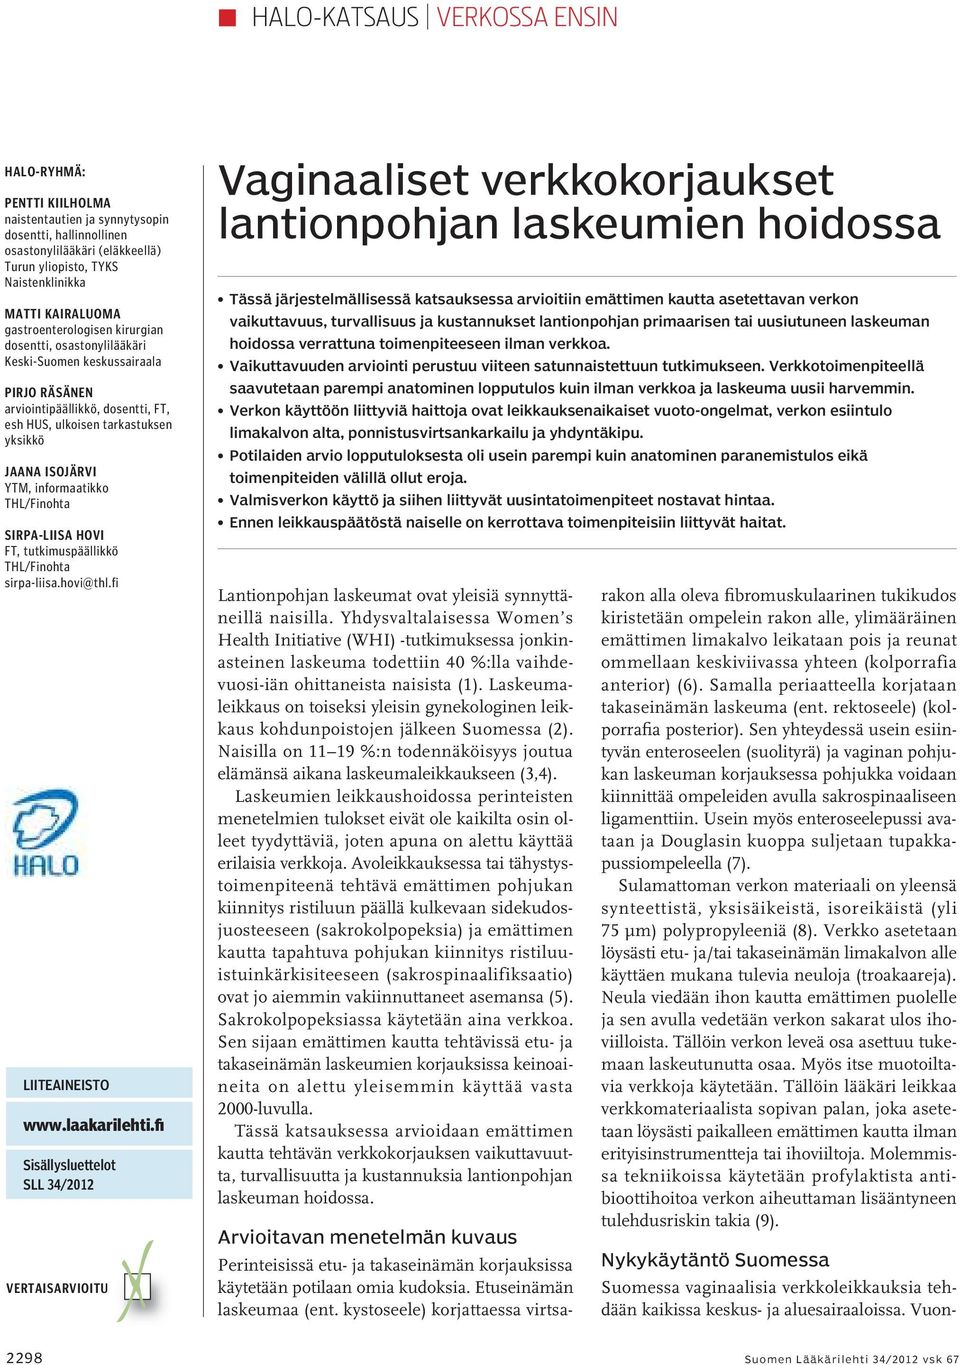 informaatikko THL/Finohta Sirpa-Liisa Hovi FT, tutkimuspäällikkö THL/Finohta sirpa-liisa.hovi@thl.fi LIITEAINEISTO www.laakarilehti.